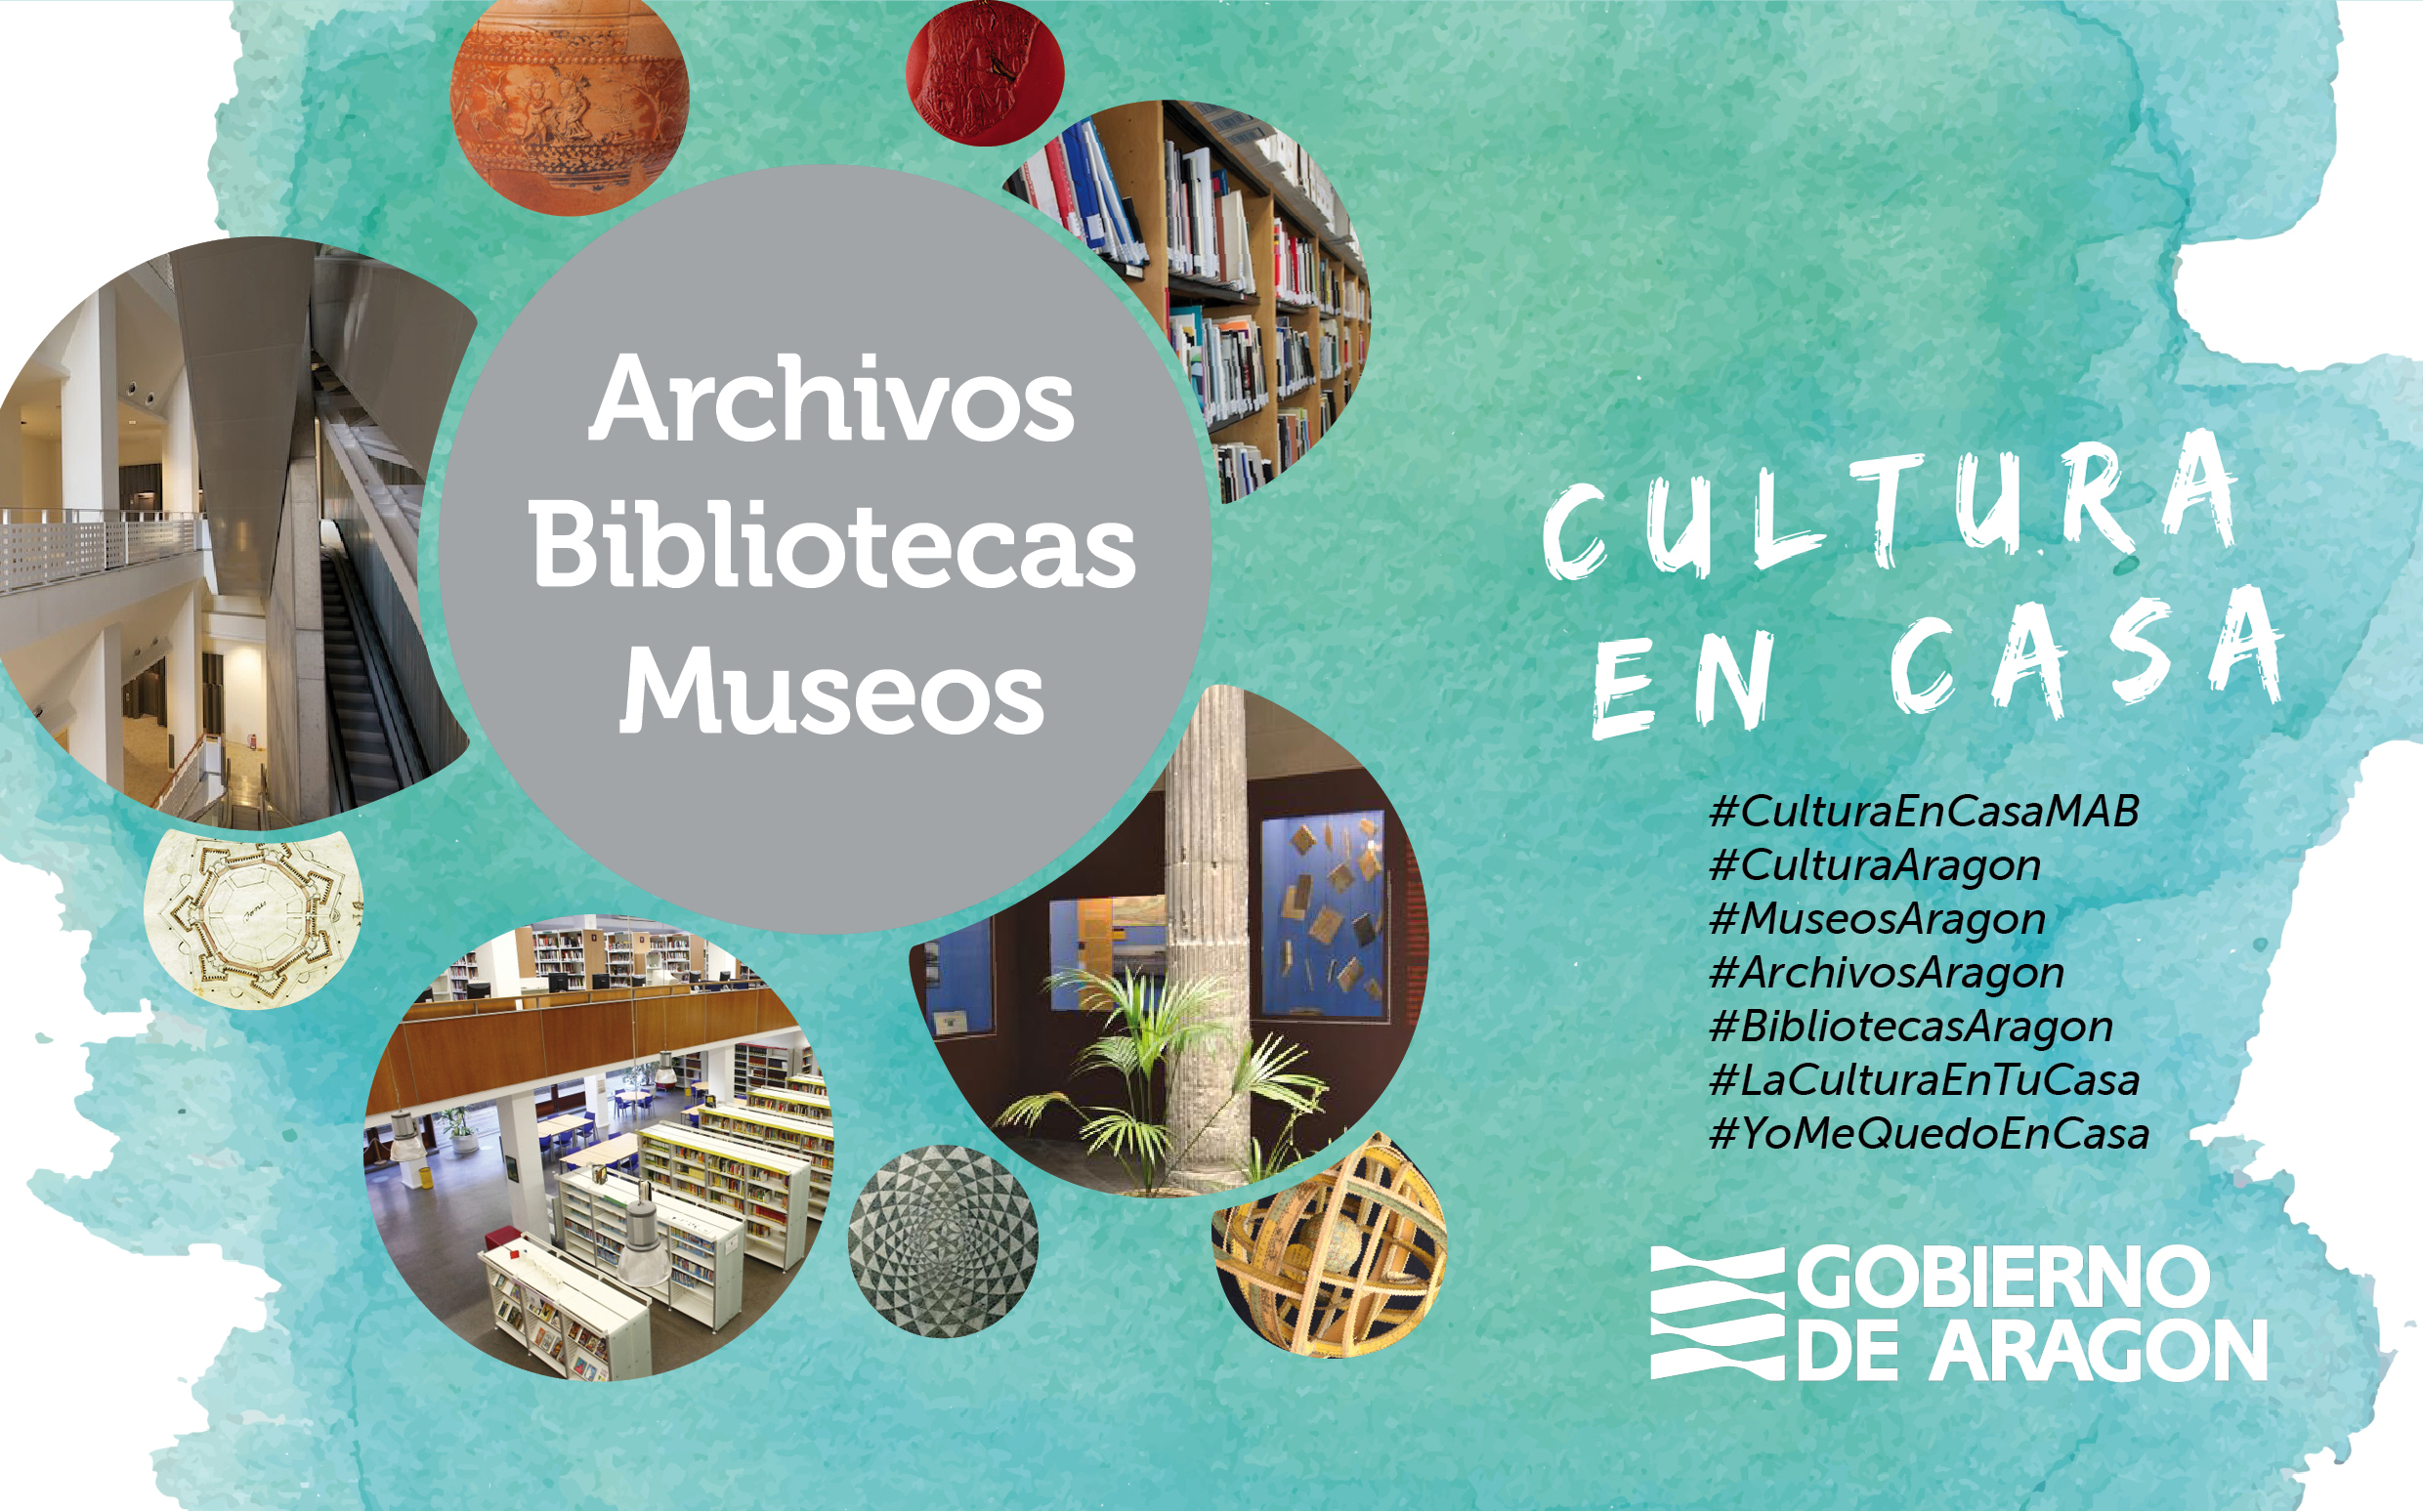 Cartel con imágenes de museos, archivos y bibliotecas, con el lema de cultura en casa.